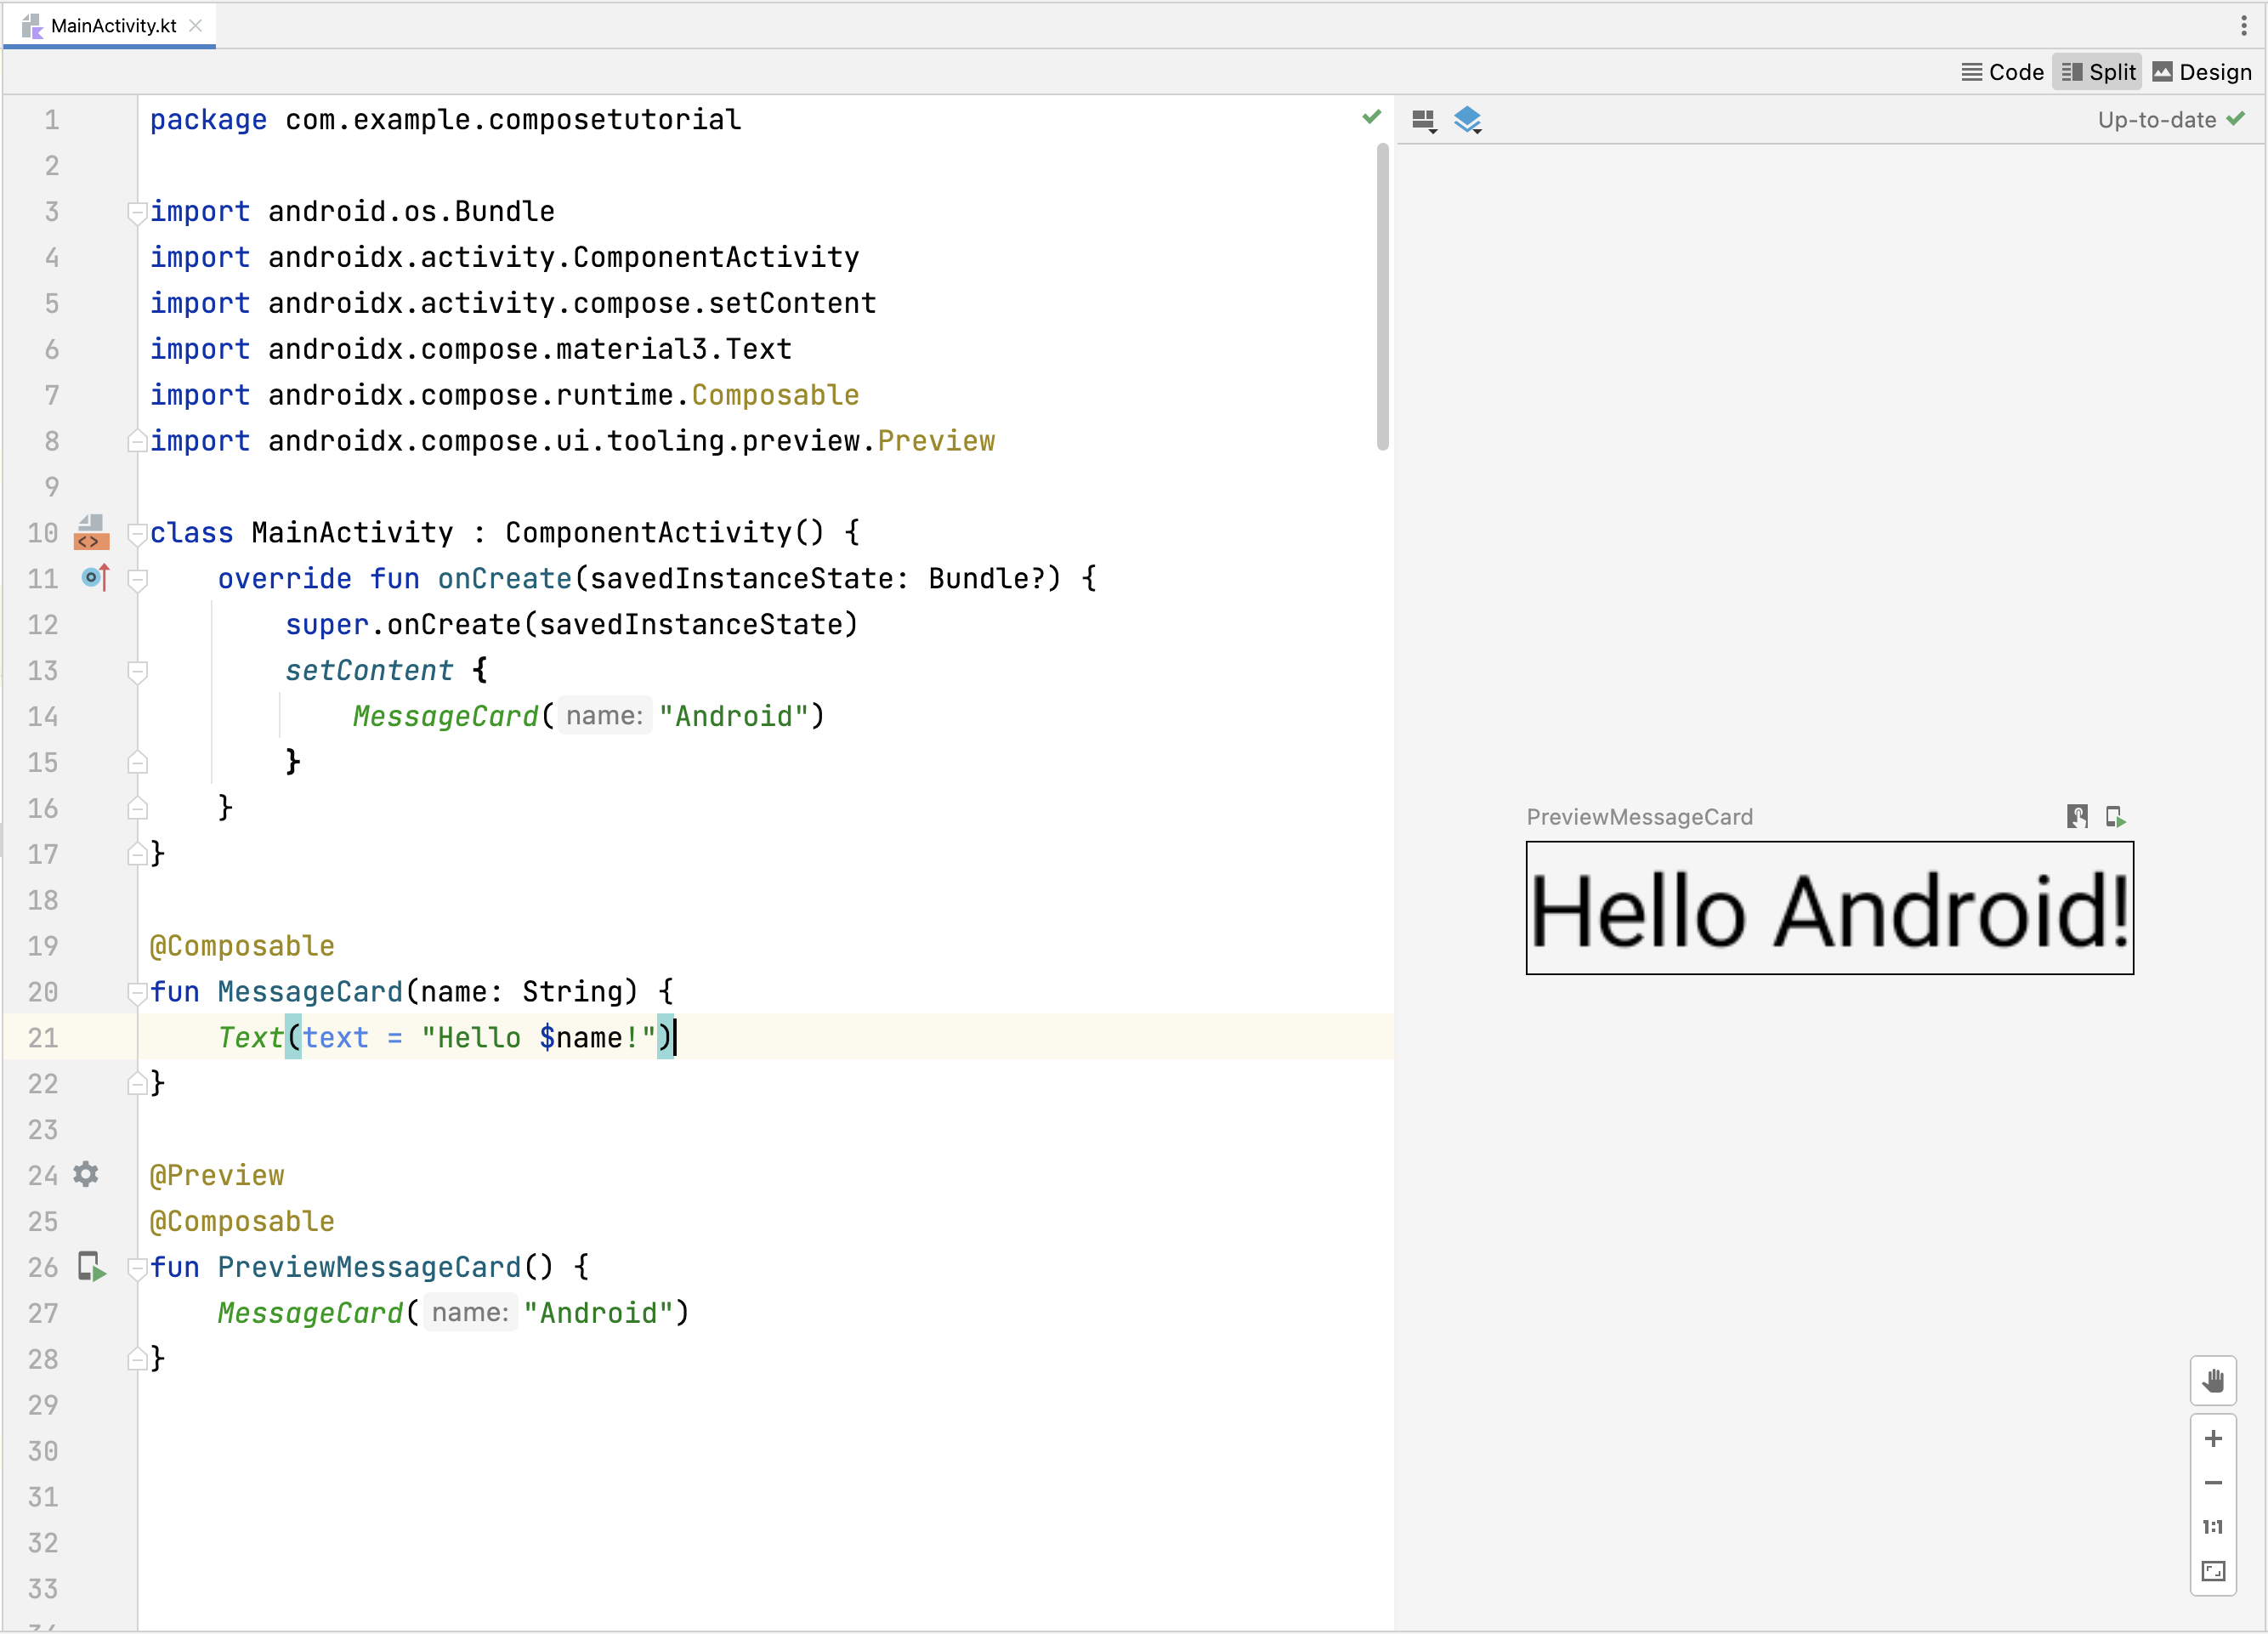 Anteprima di una funzione componibile in Android Studio